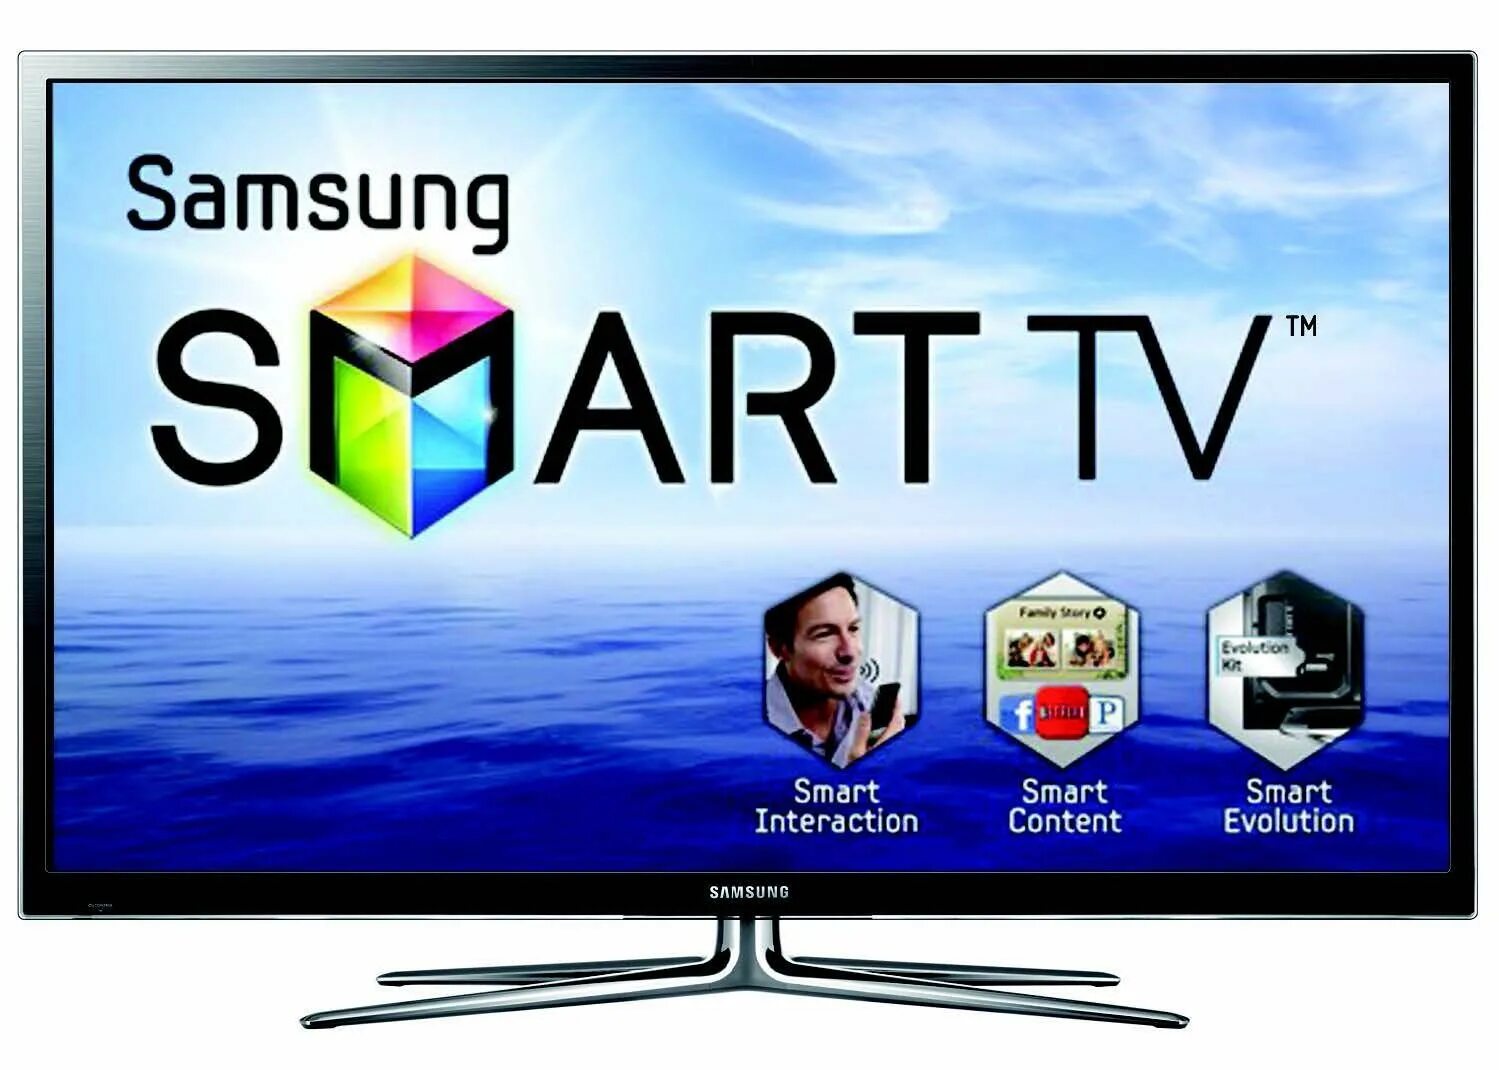 Смарт ТВ Samsung. Телевизор Samsung Smart TV. Телевизор самсунг смарт ТВ 60. Samsung Smart TV 2012. Смарт самсунг бесплатные каналы